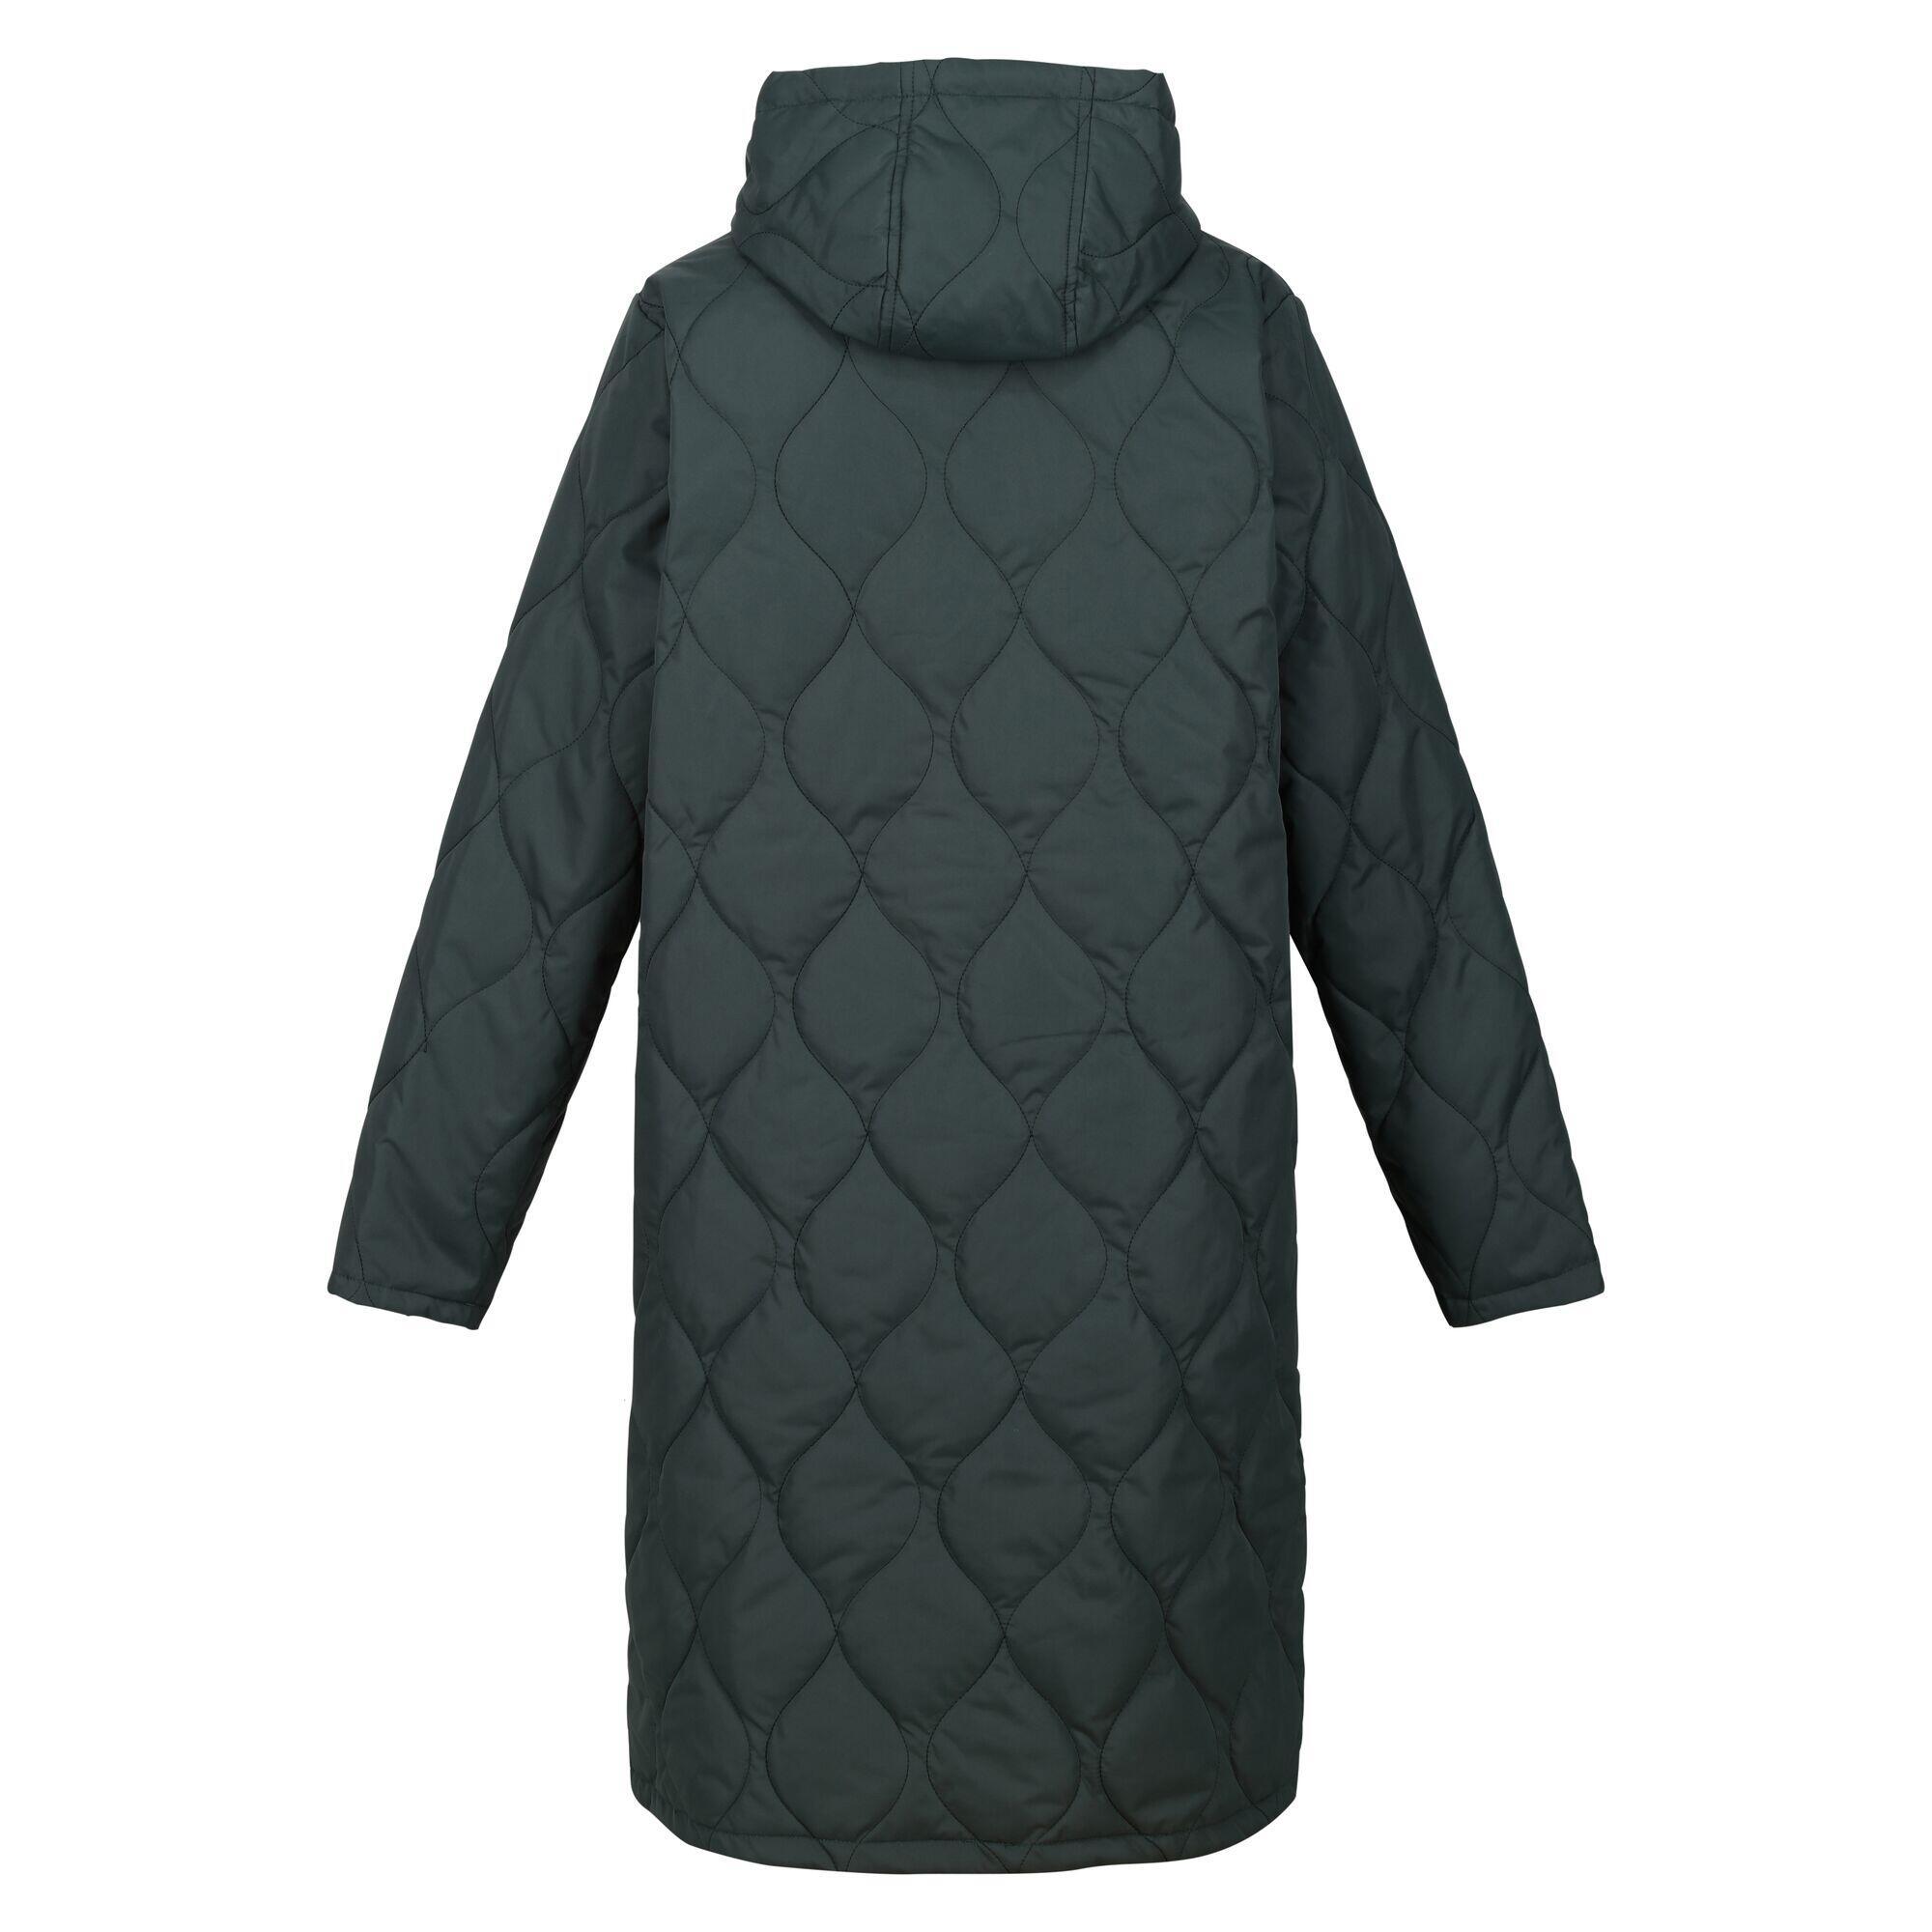 Womens/Ladies Jaycee Quilted Hooded Jacket (Darkest Spruce/Dark Forest Green) 2/5